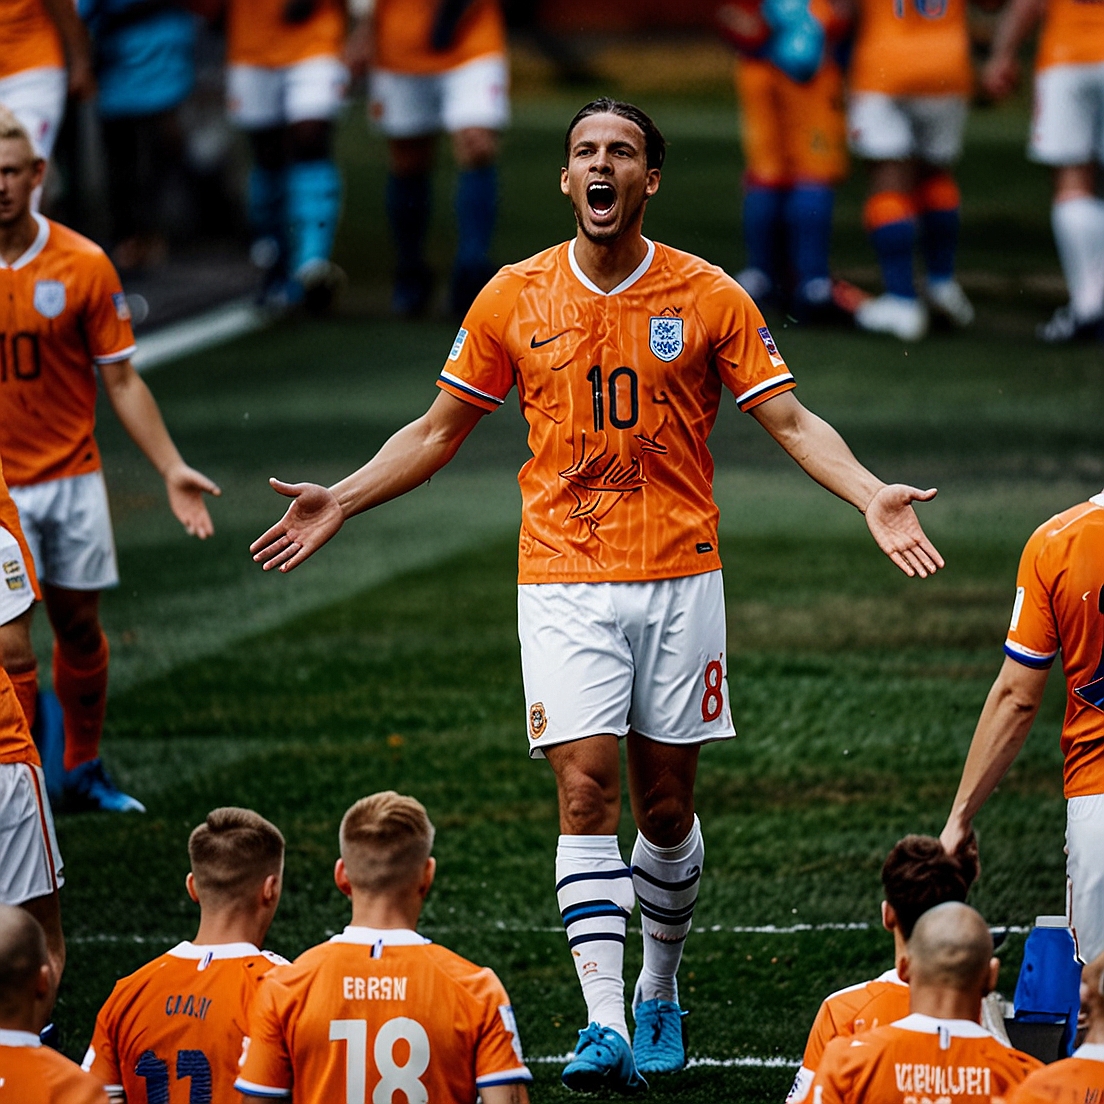 Voorbeschouwing: Nederland tegen Engeland in de halve finale van het EK